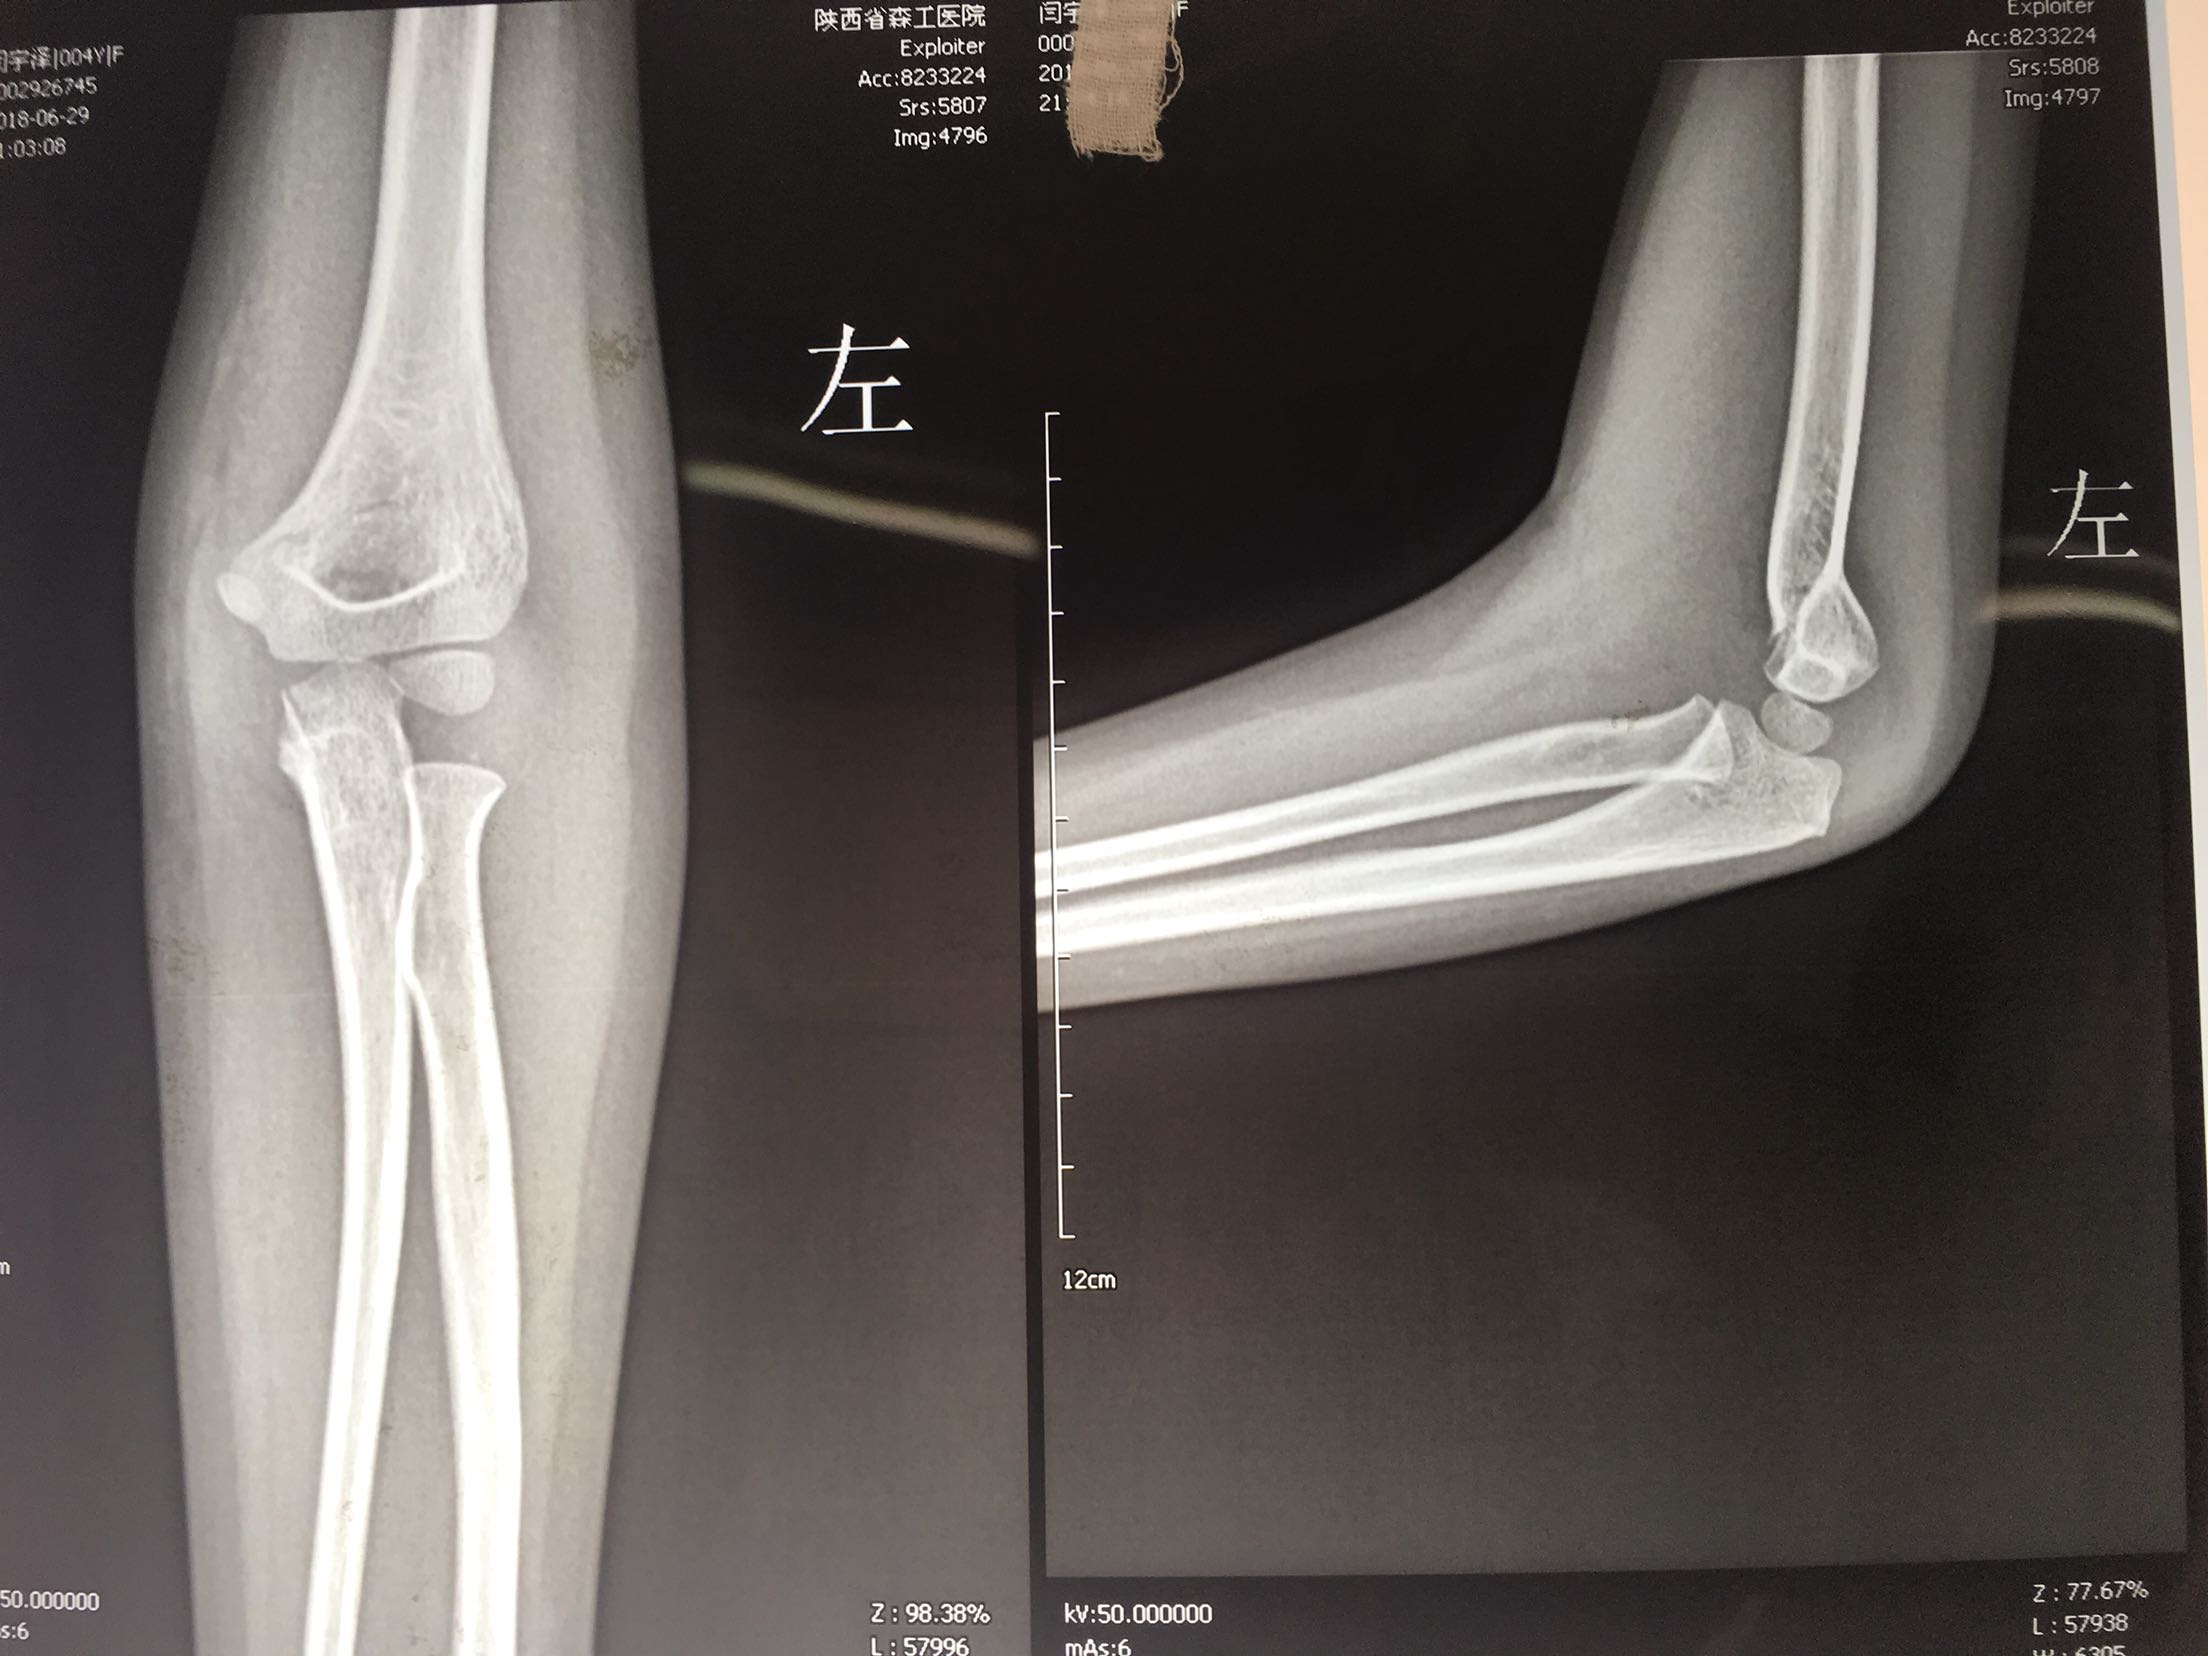 儿童骨折微创系列之儿童肱骨骨折 ···严重移位的髁上骨折_肱骨骨折_介绍_治疗方式 - 好大夫在线